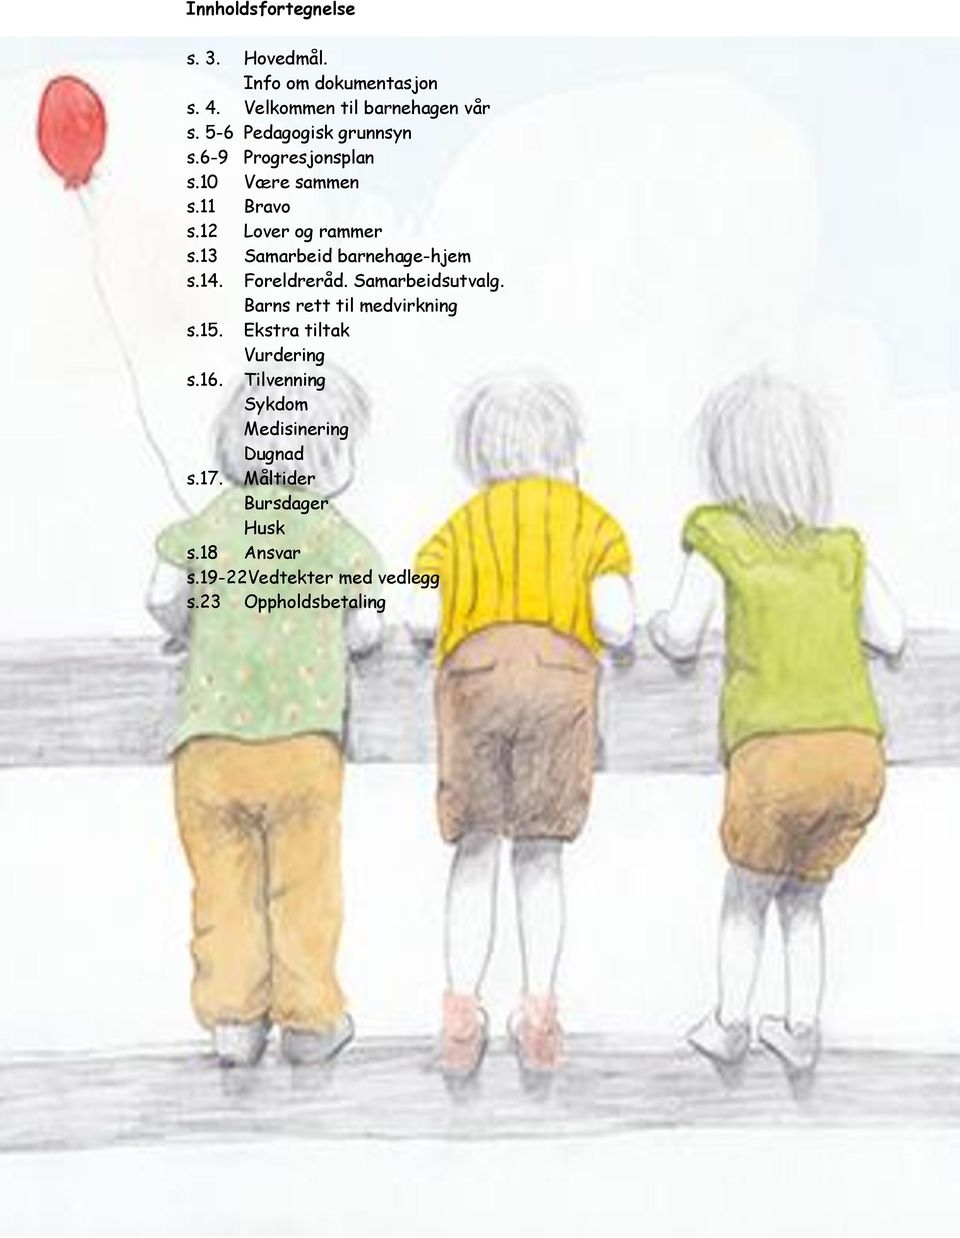 13 Samarbeid barnehage-hjem s.14. Foreldreråd. Samarbeidsutvalg. Barns rett til medvirkning s.15.